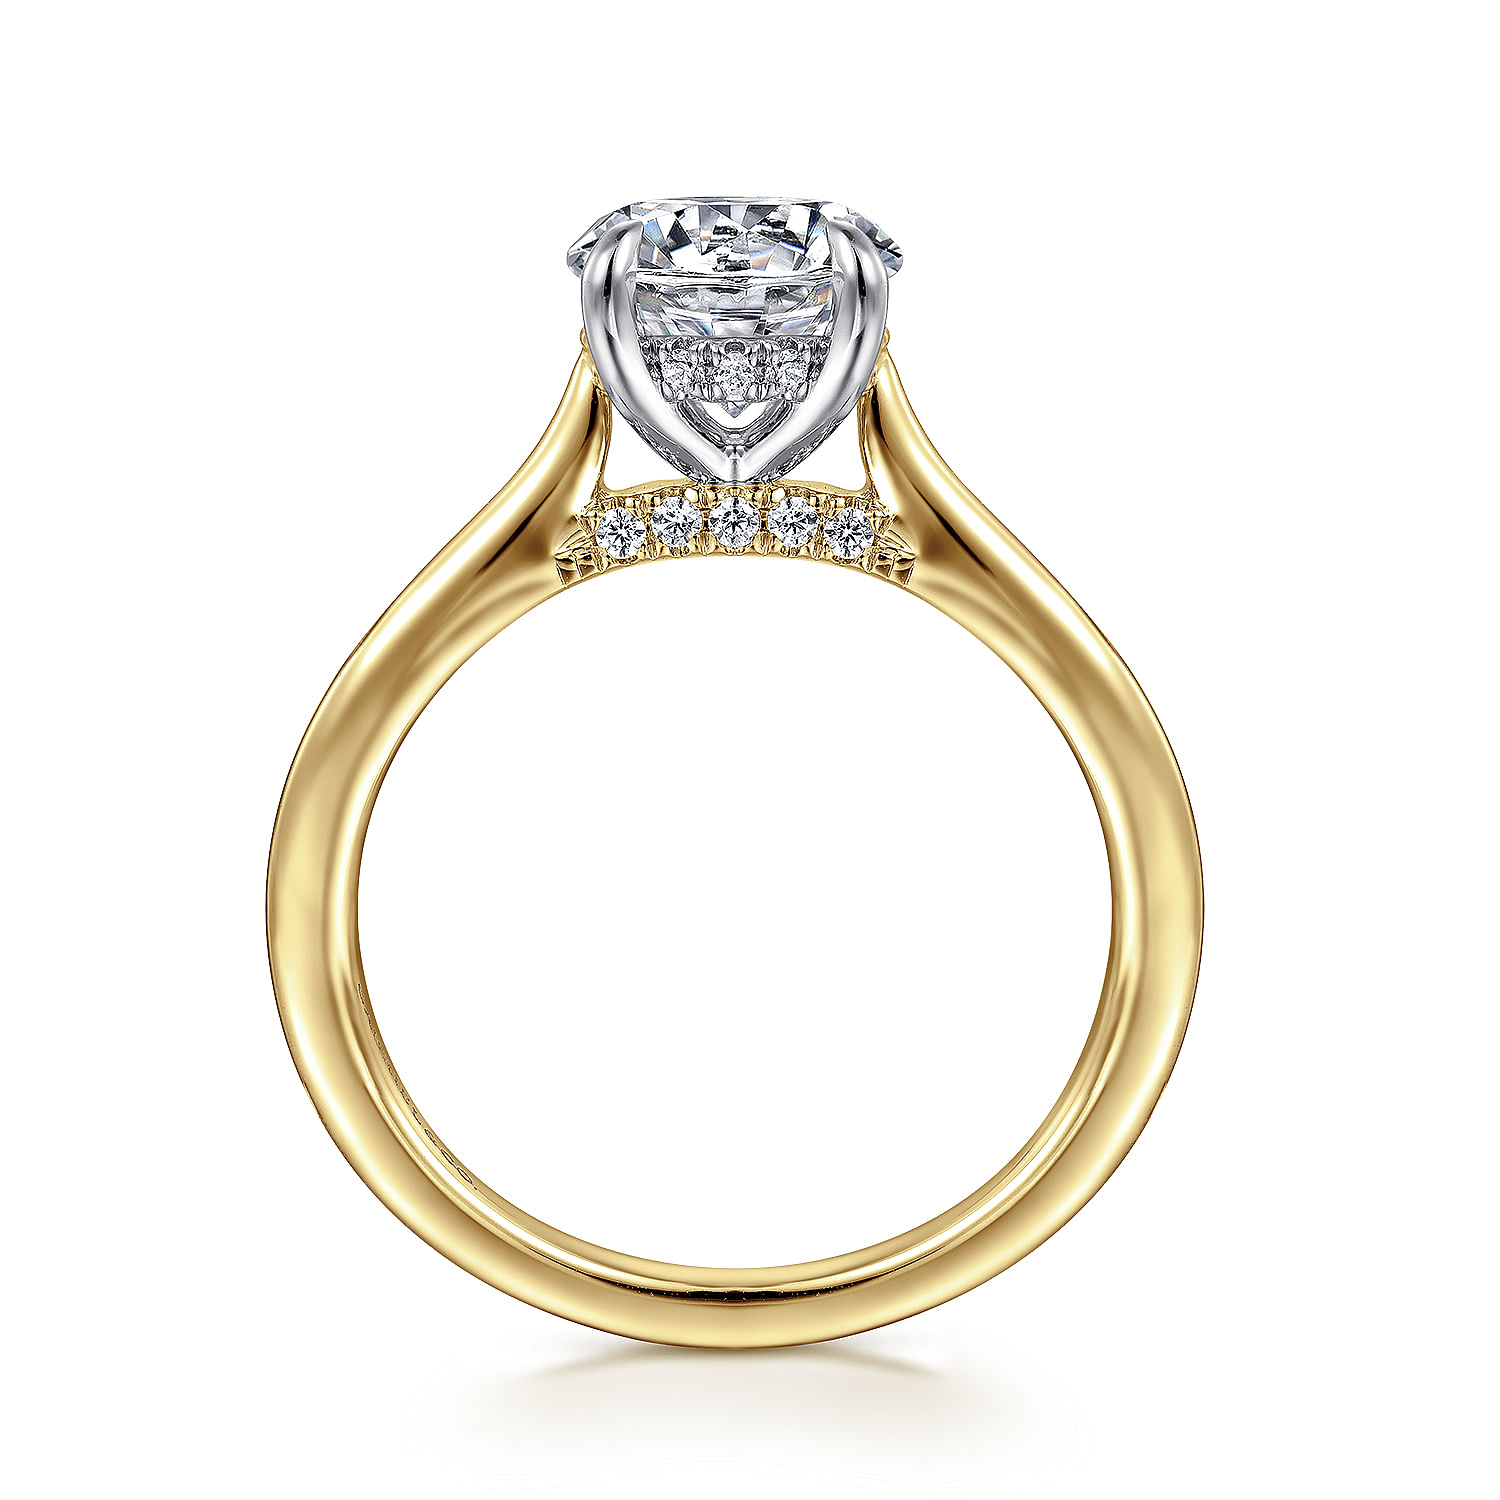 14K White and Yellow Gold Round Diamond Engagement Ring